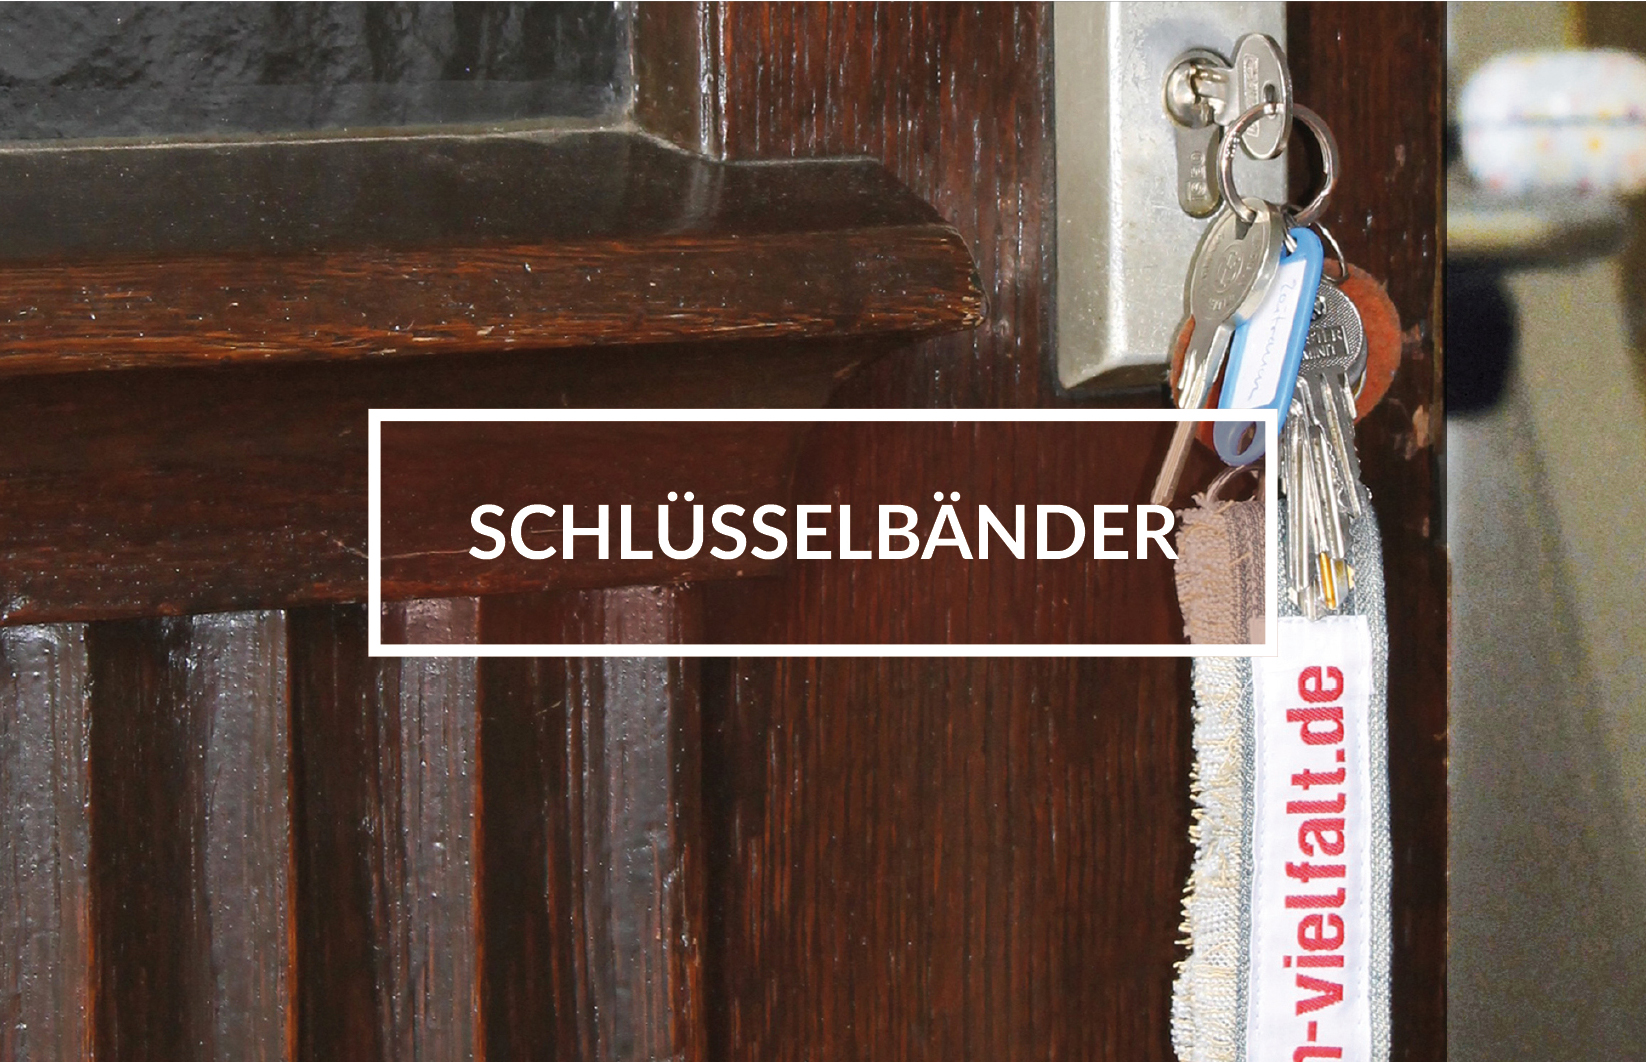 Geöffnete Tür mit Schlüssel im Schloss, Schlüsselband mit der Aufschrift:"vielfalt.de". In der Mitte des Bildes weiß gerahmter Kasten mit dem Schriftzug: "Schlüsselbänder".